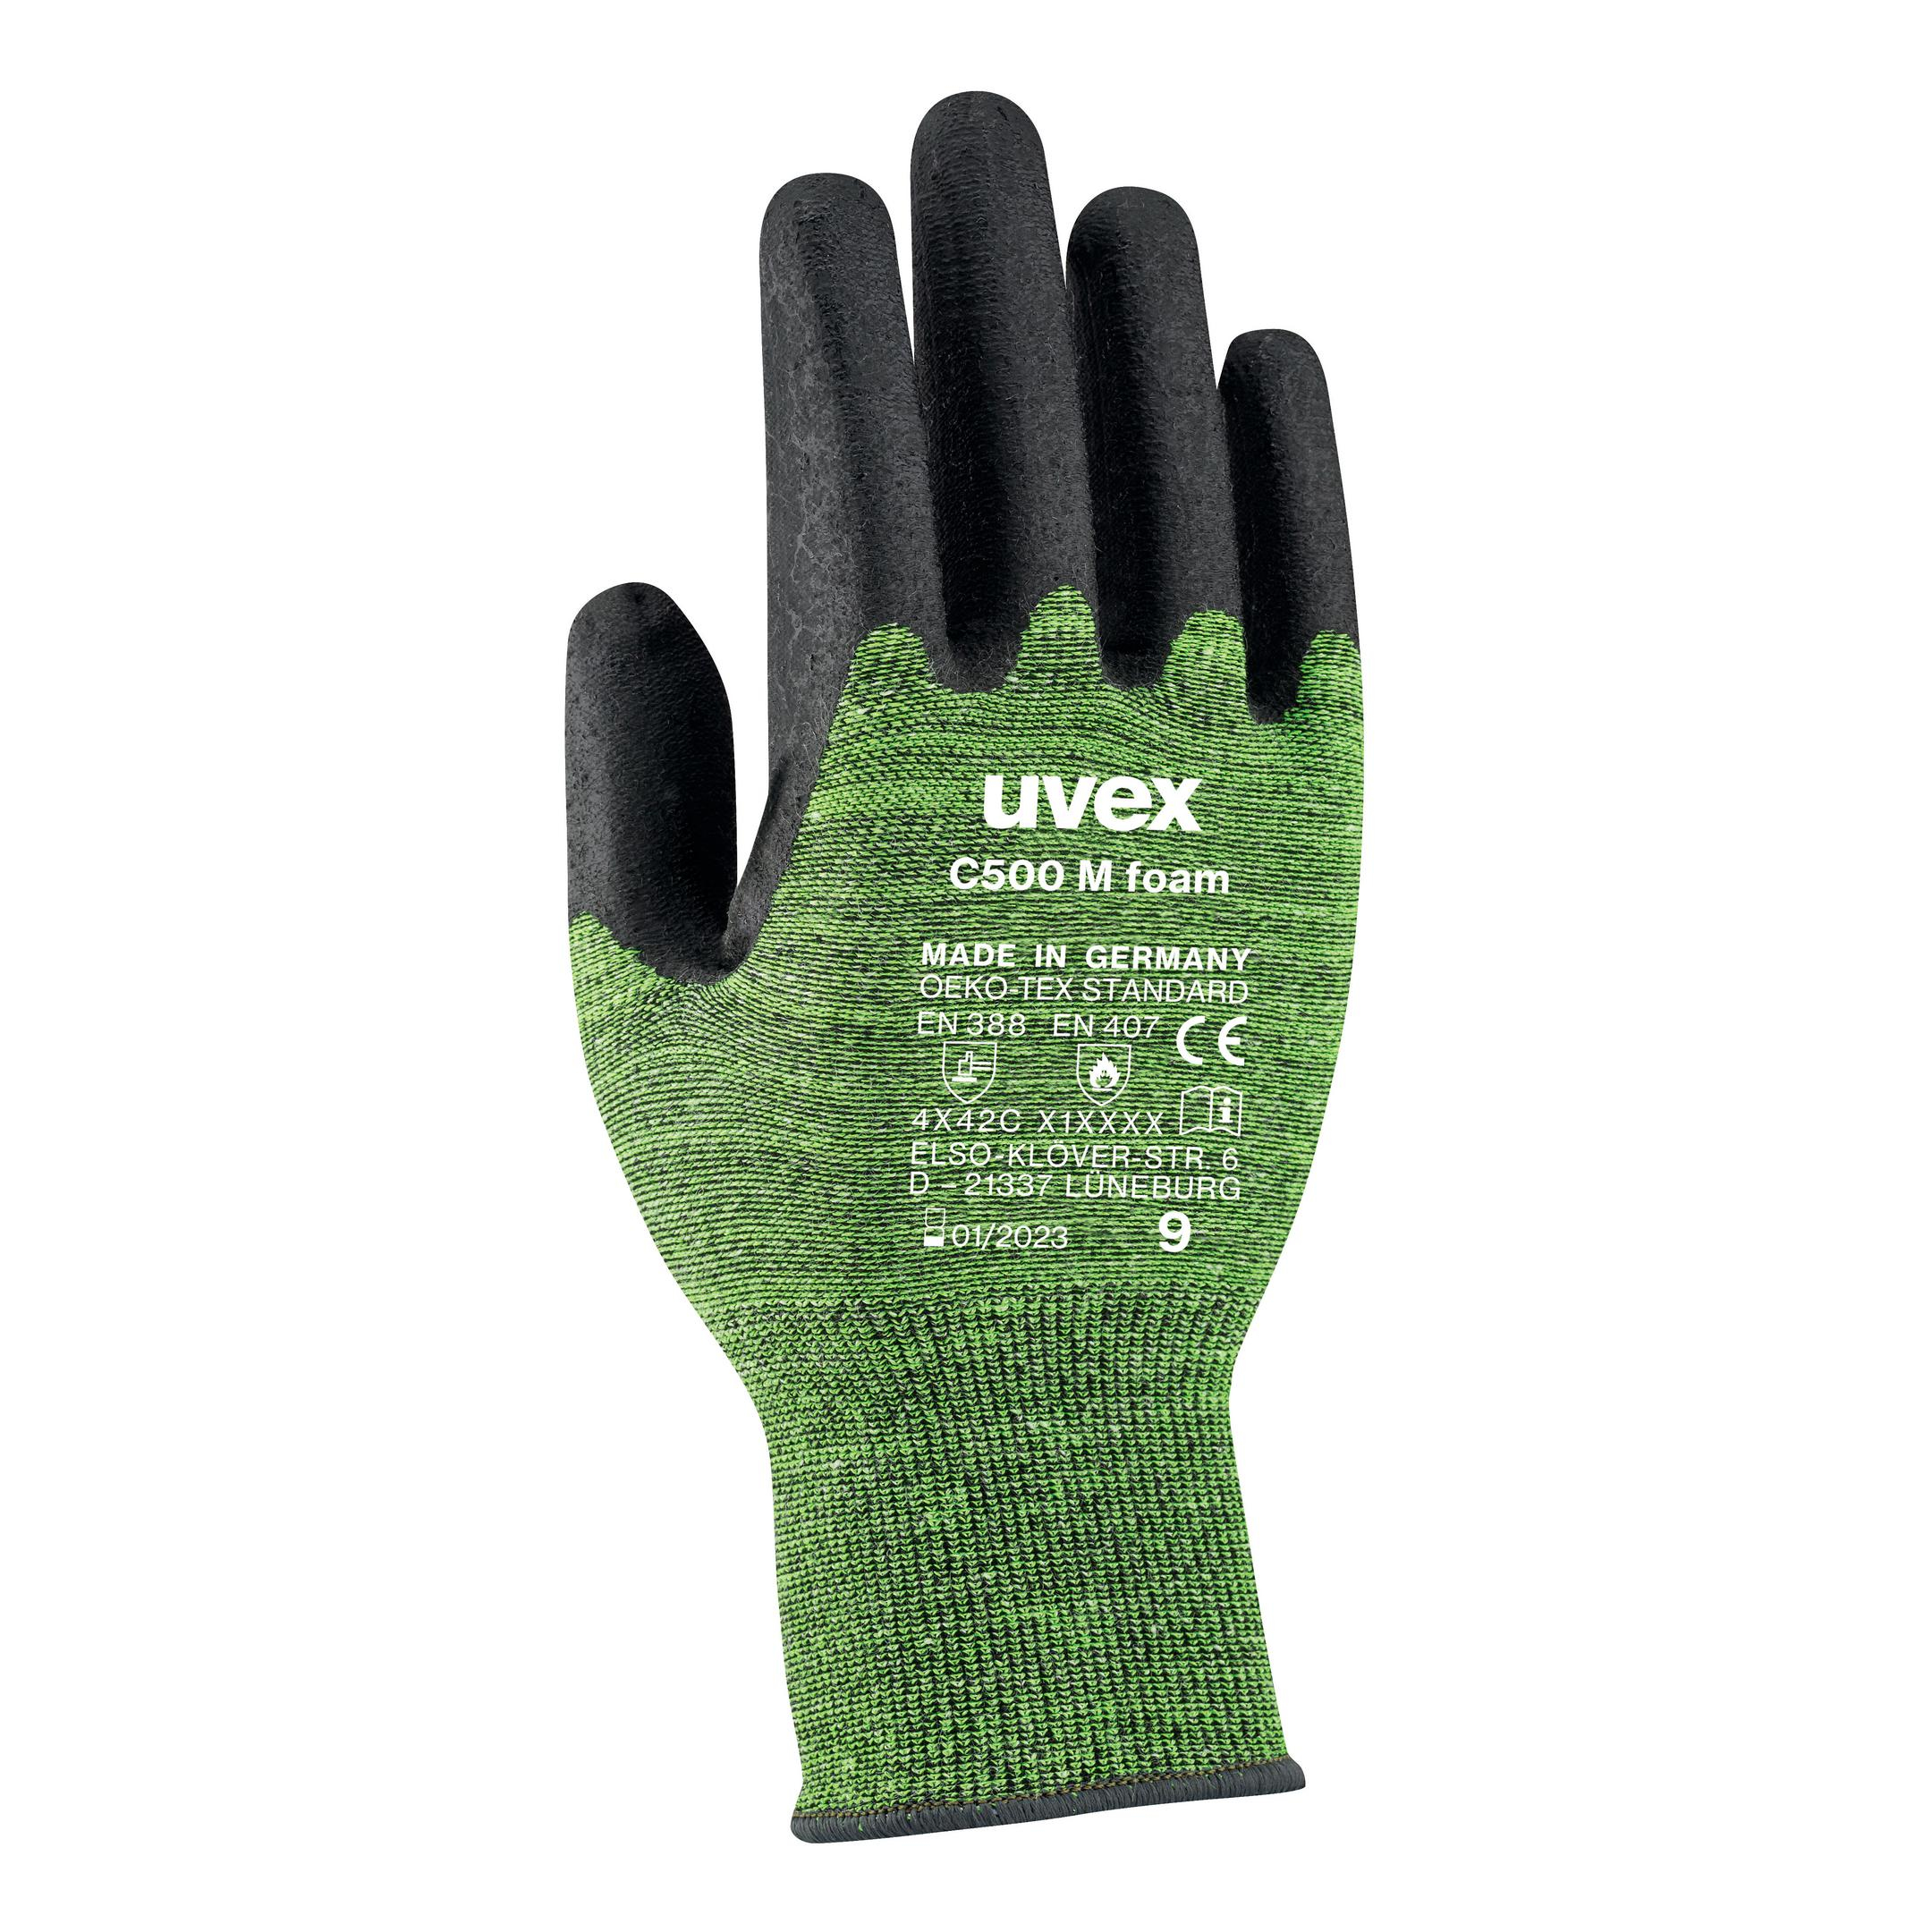 UVEX Arbeitsschutz Handschutz Strick-HS C500 M foam Gr. 07 6049807